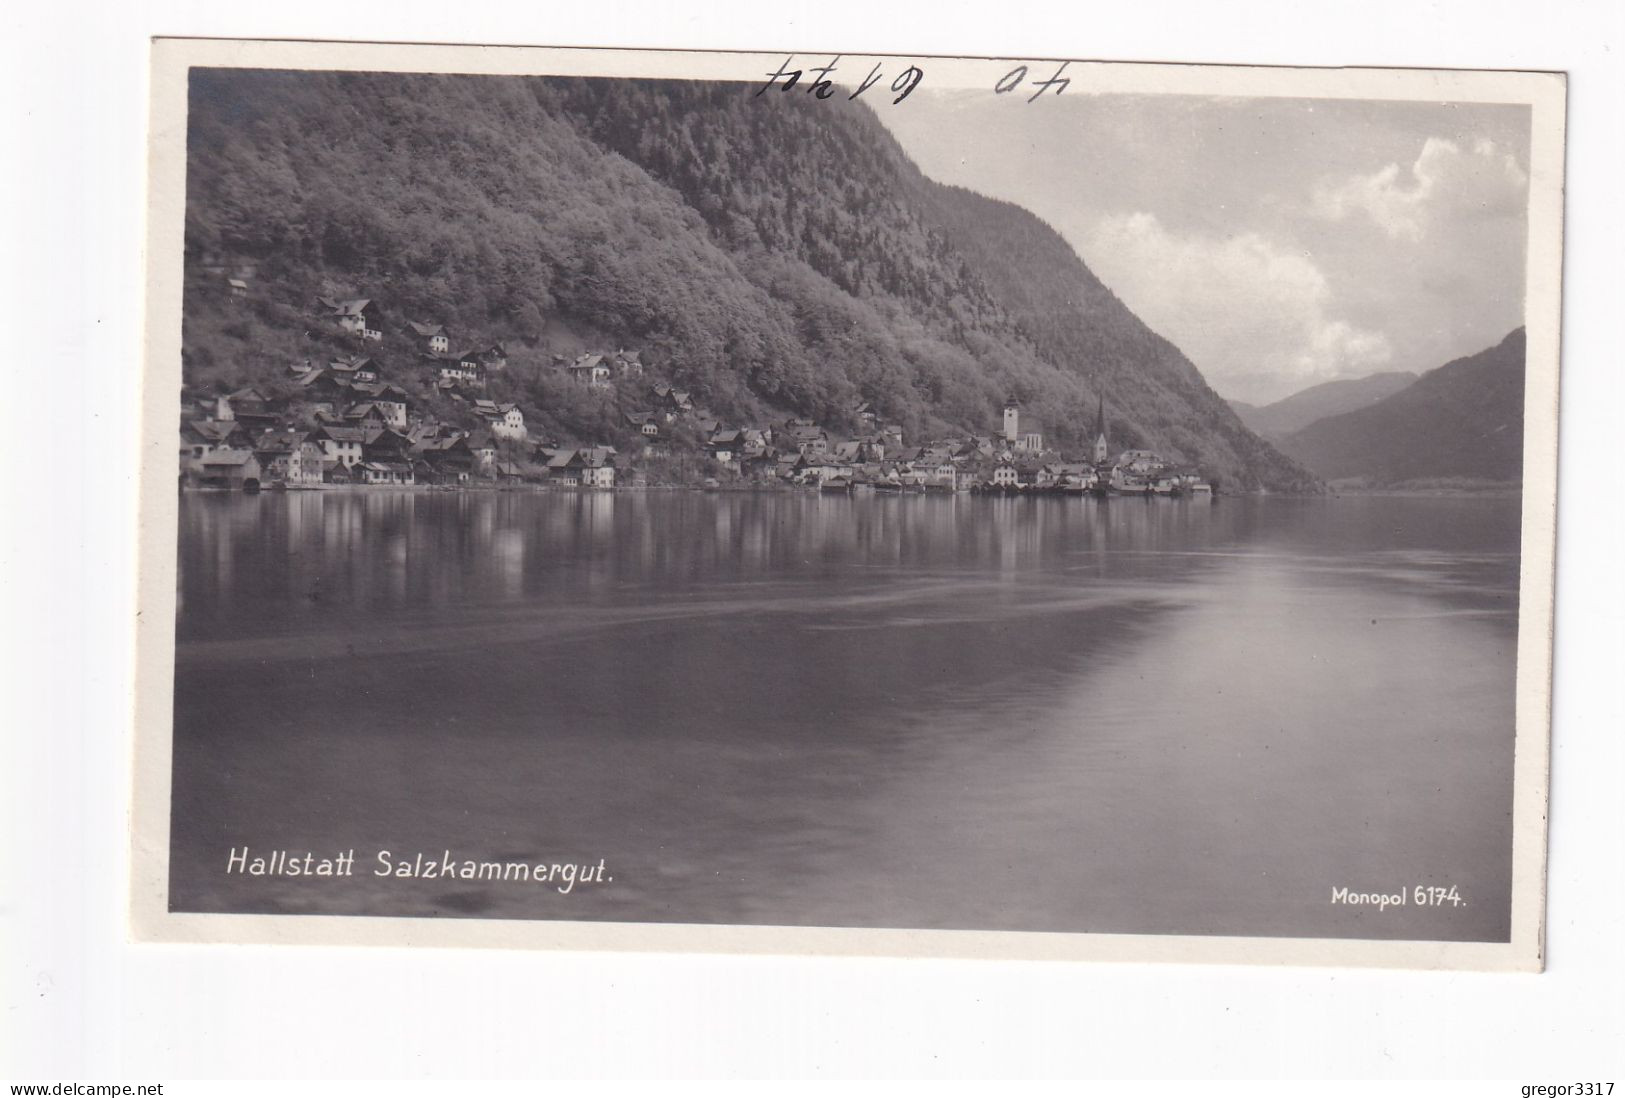 E5698) HALLSTATT - Salzkammergut - S/W FOTO AK - Monopol 6174 - Hallstatt